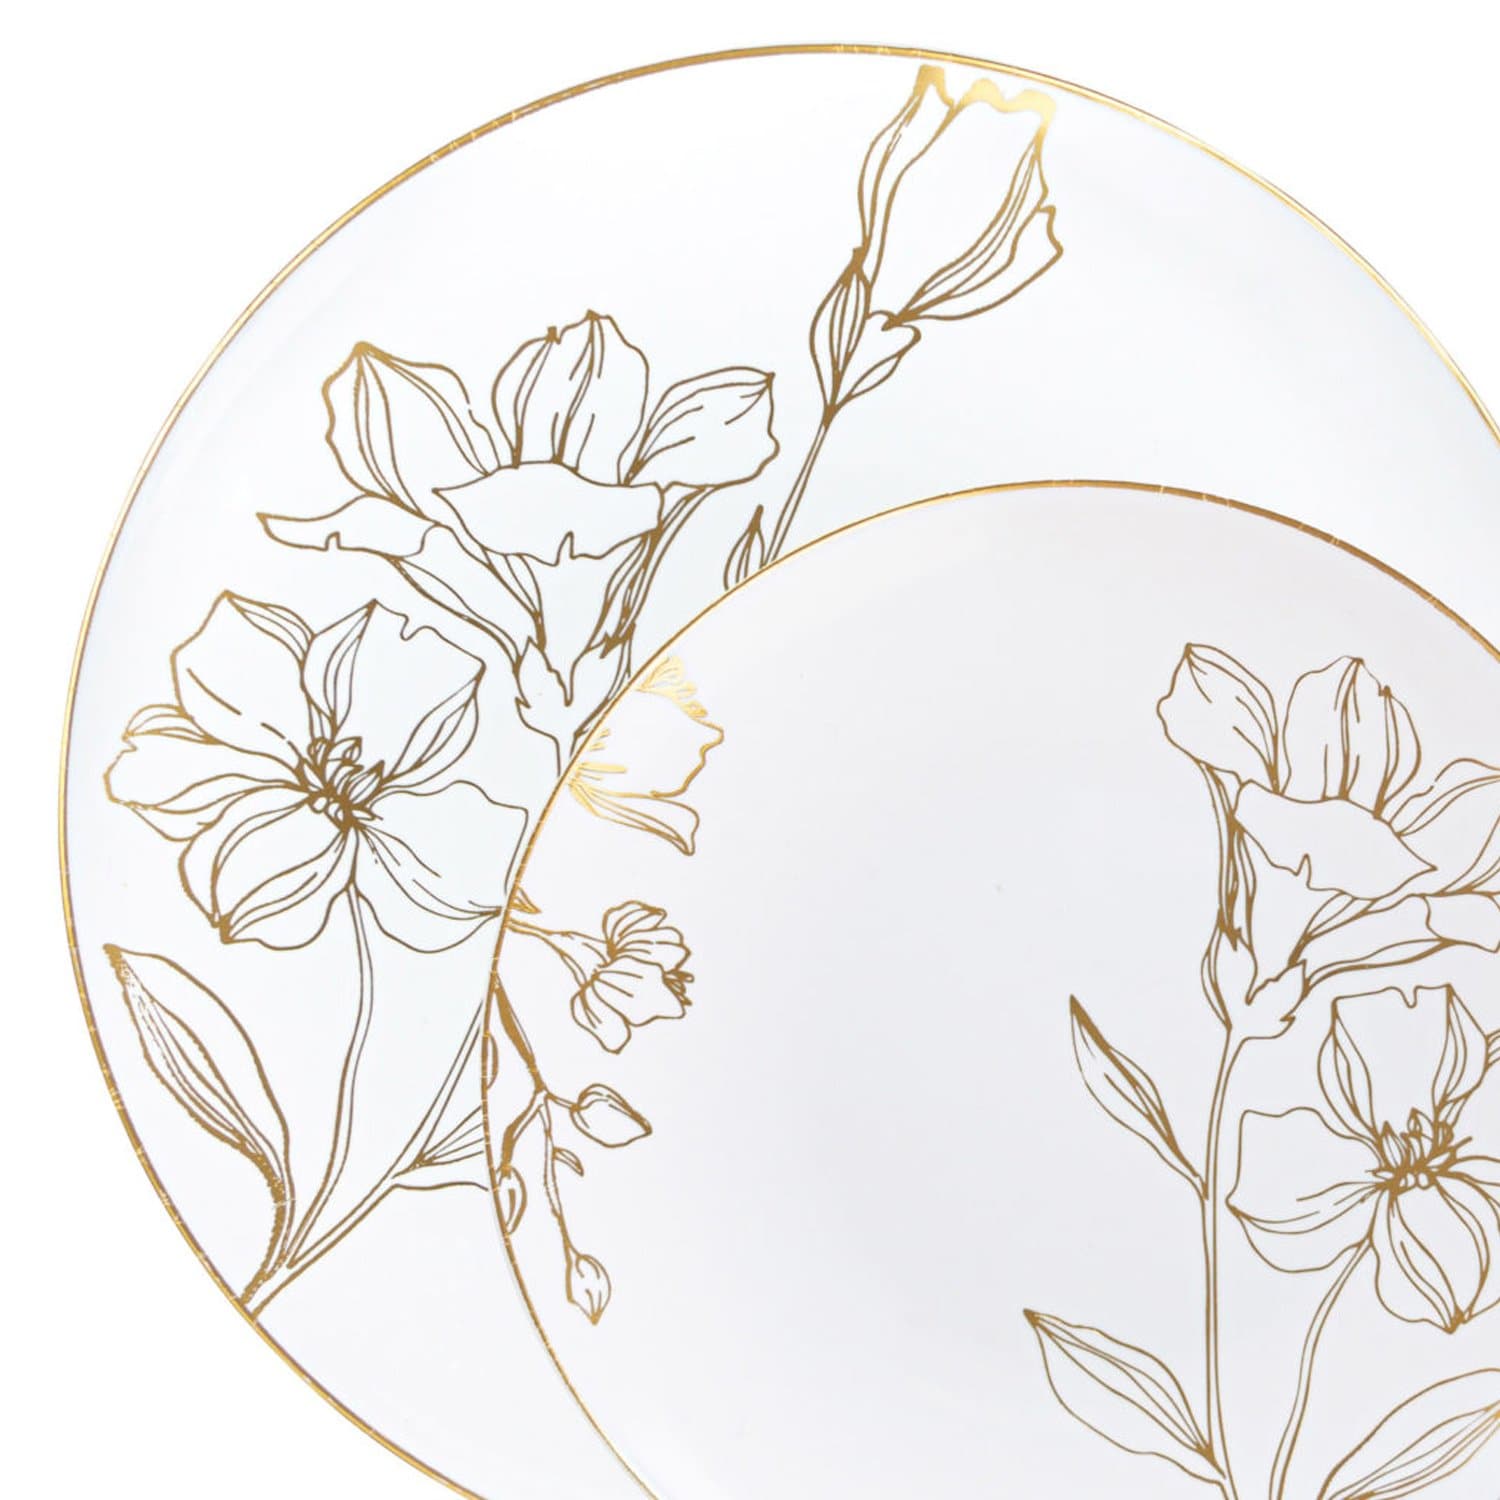 Antique Gold Floral Dinner Plates 9″ Elegant Plates Blue Sky   